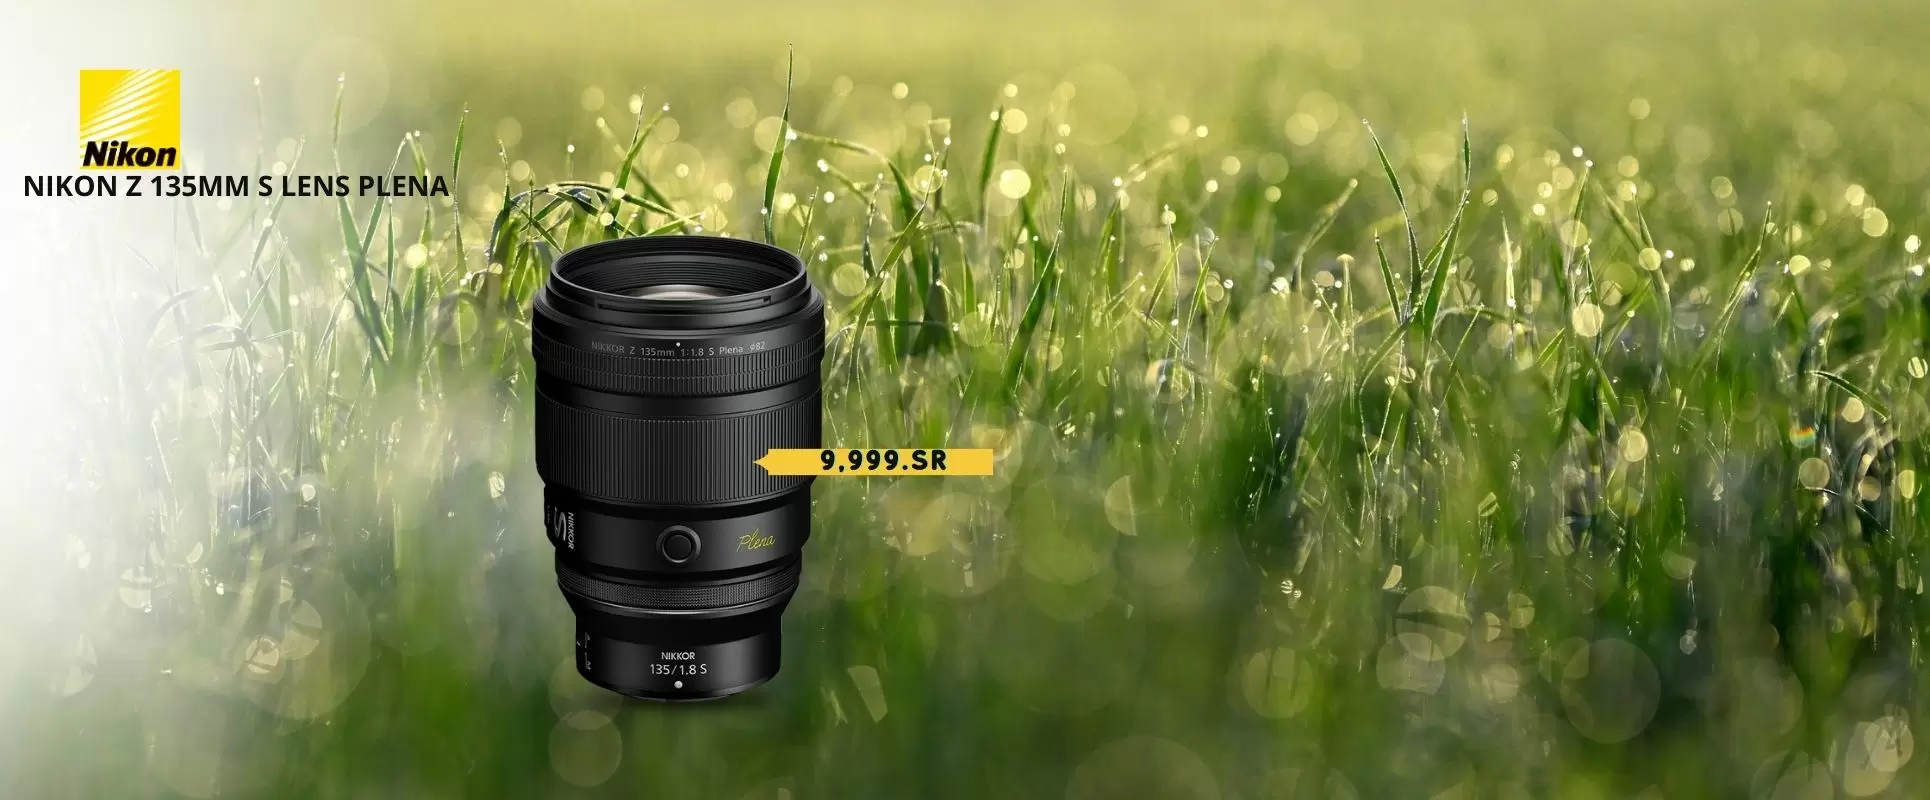 Nikon New Lenses